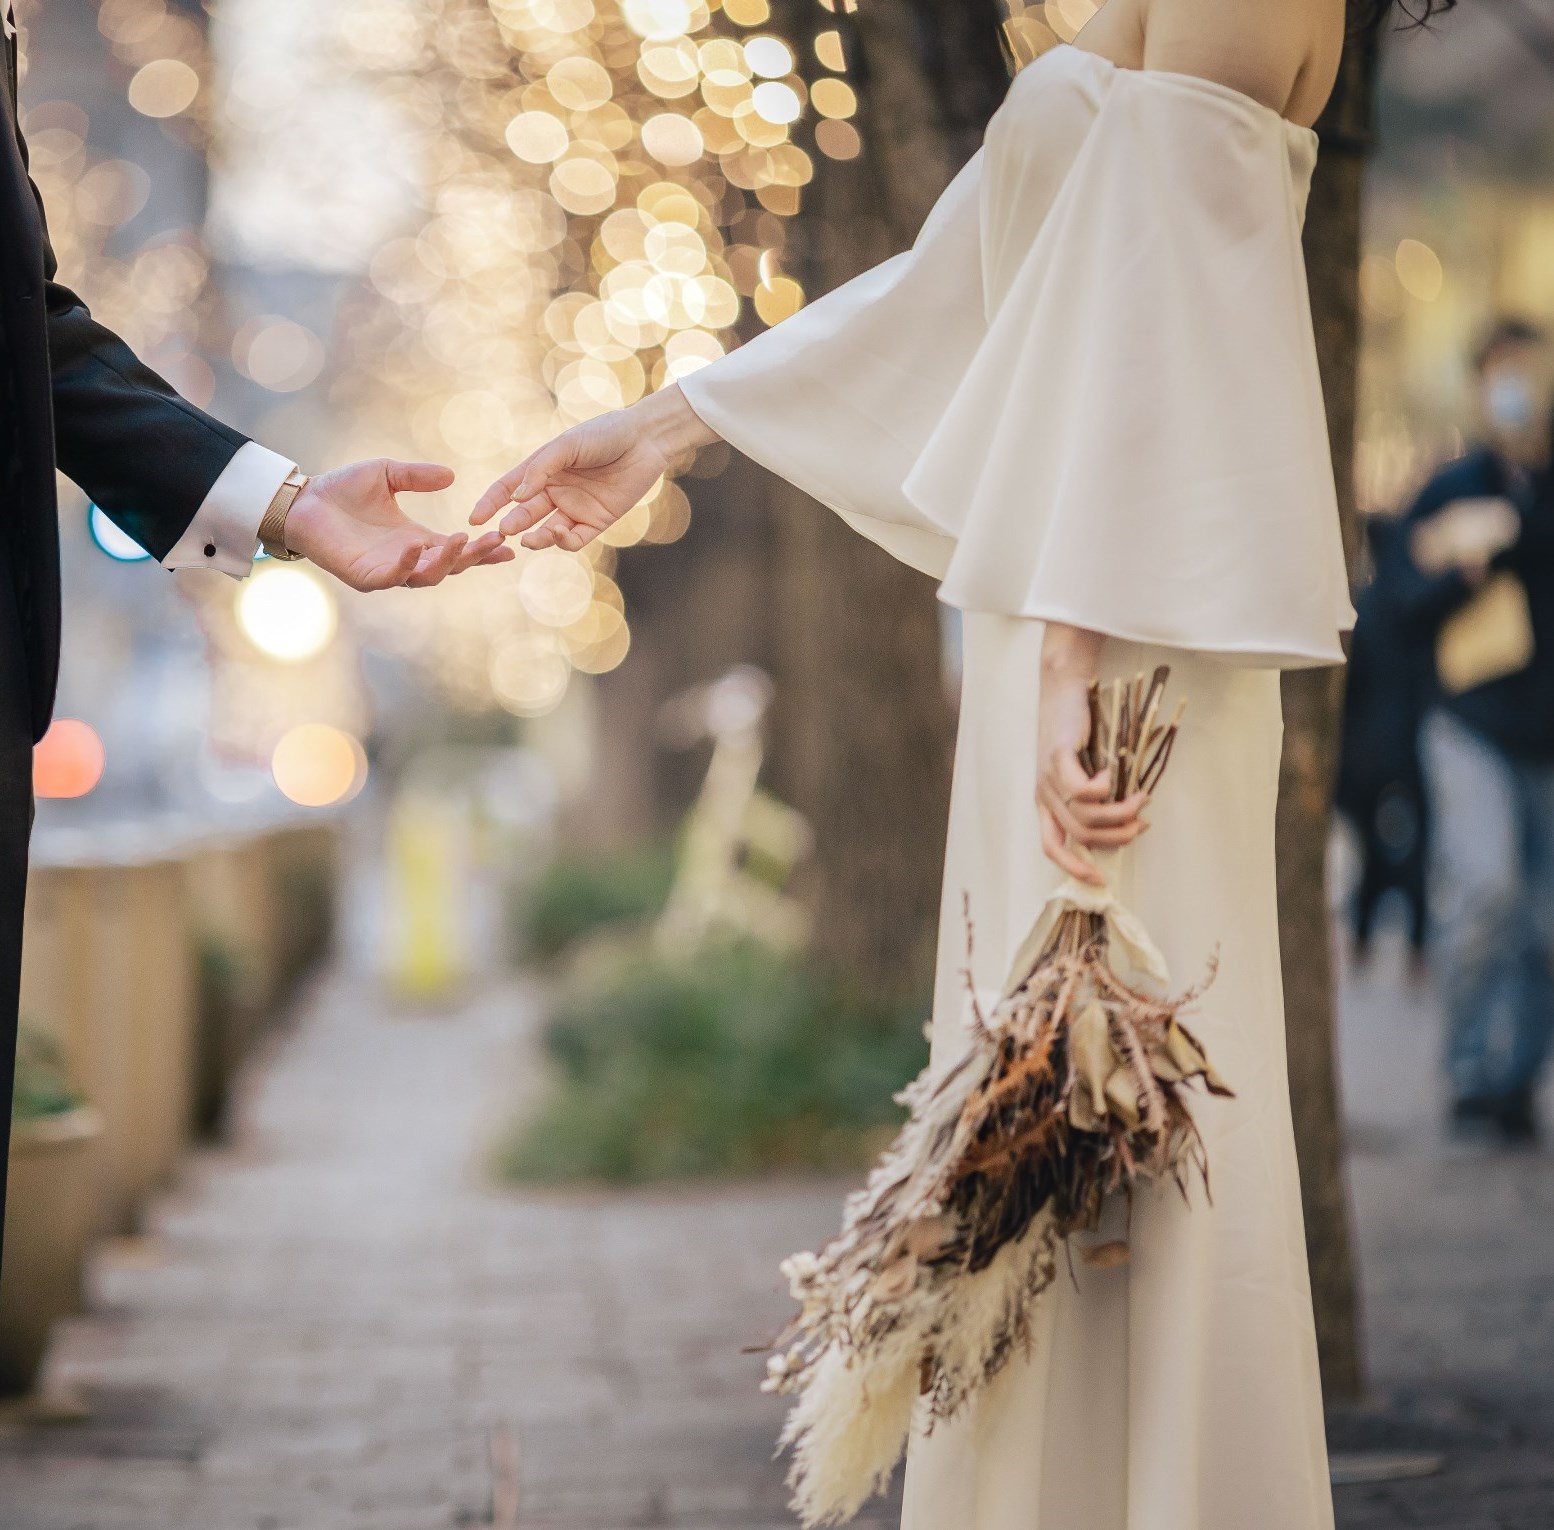 ウェディングドレスを着た花嫁とタキシードを着た新郎の写真